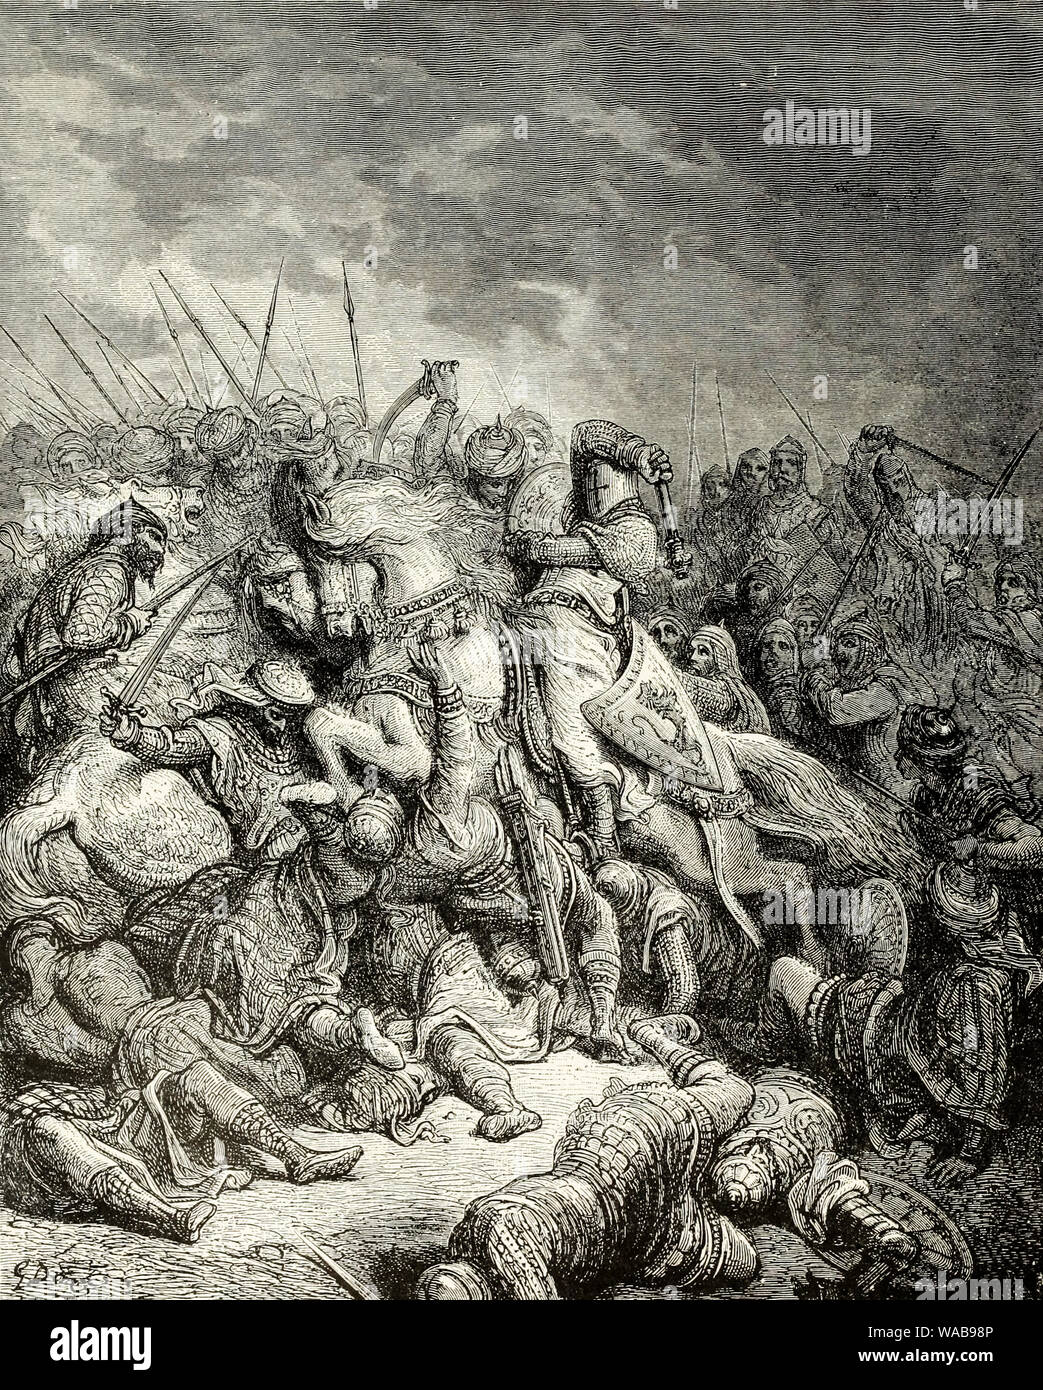 Les croisades, Richard et Saladin à la bataille d'Arsuf, 1191, gravure de Gustav doré, avant 1883 Banque D'Images